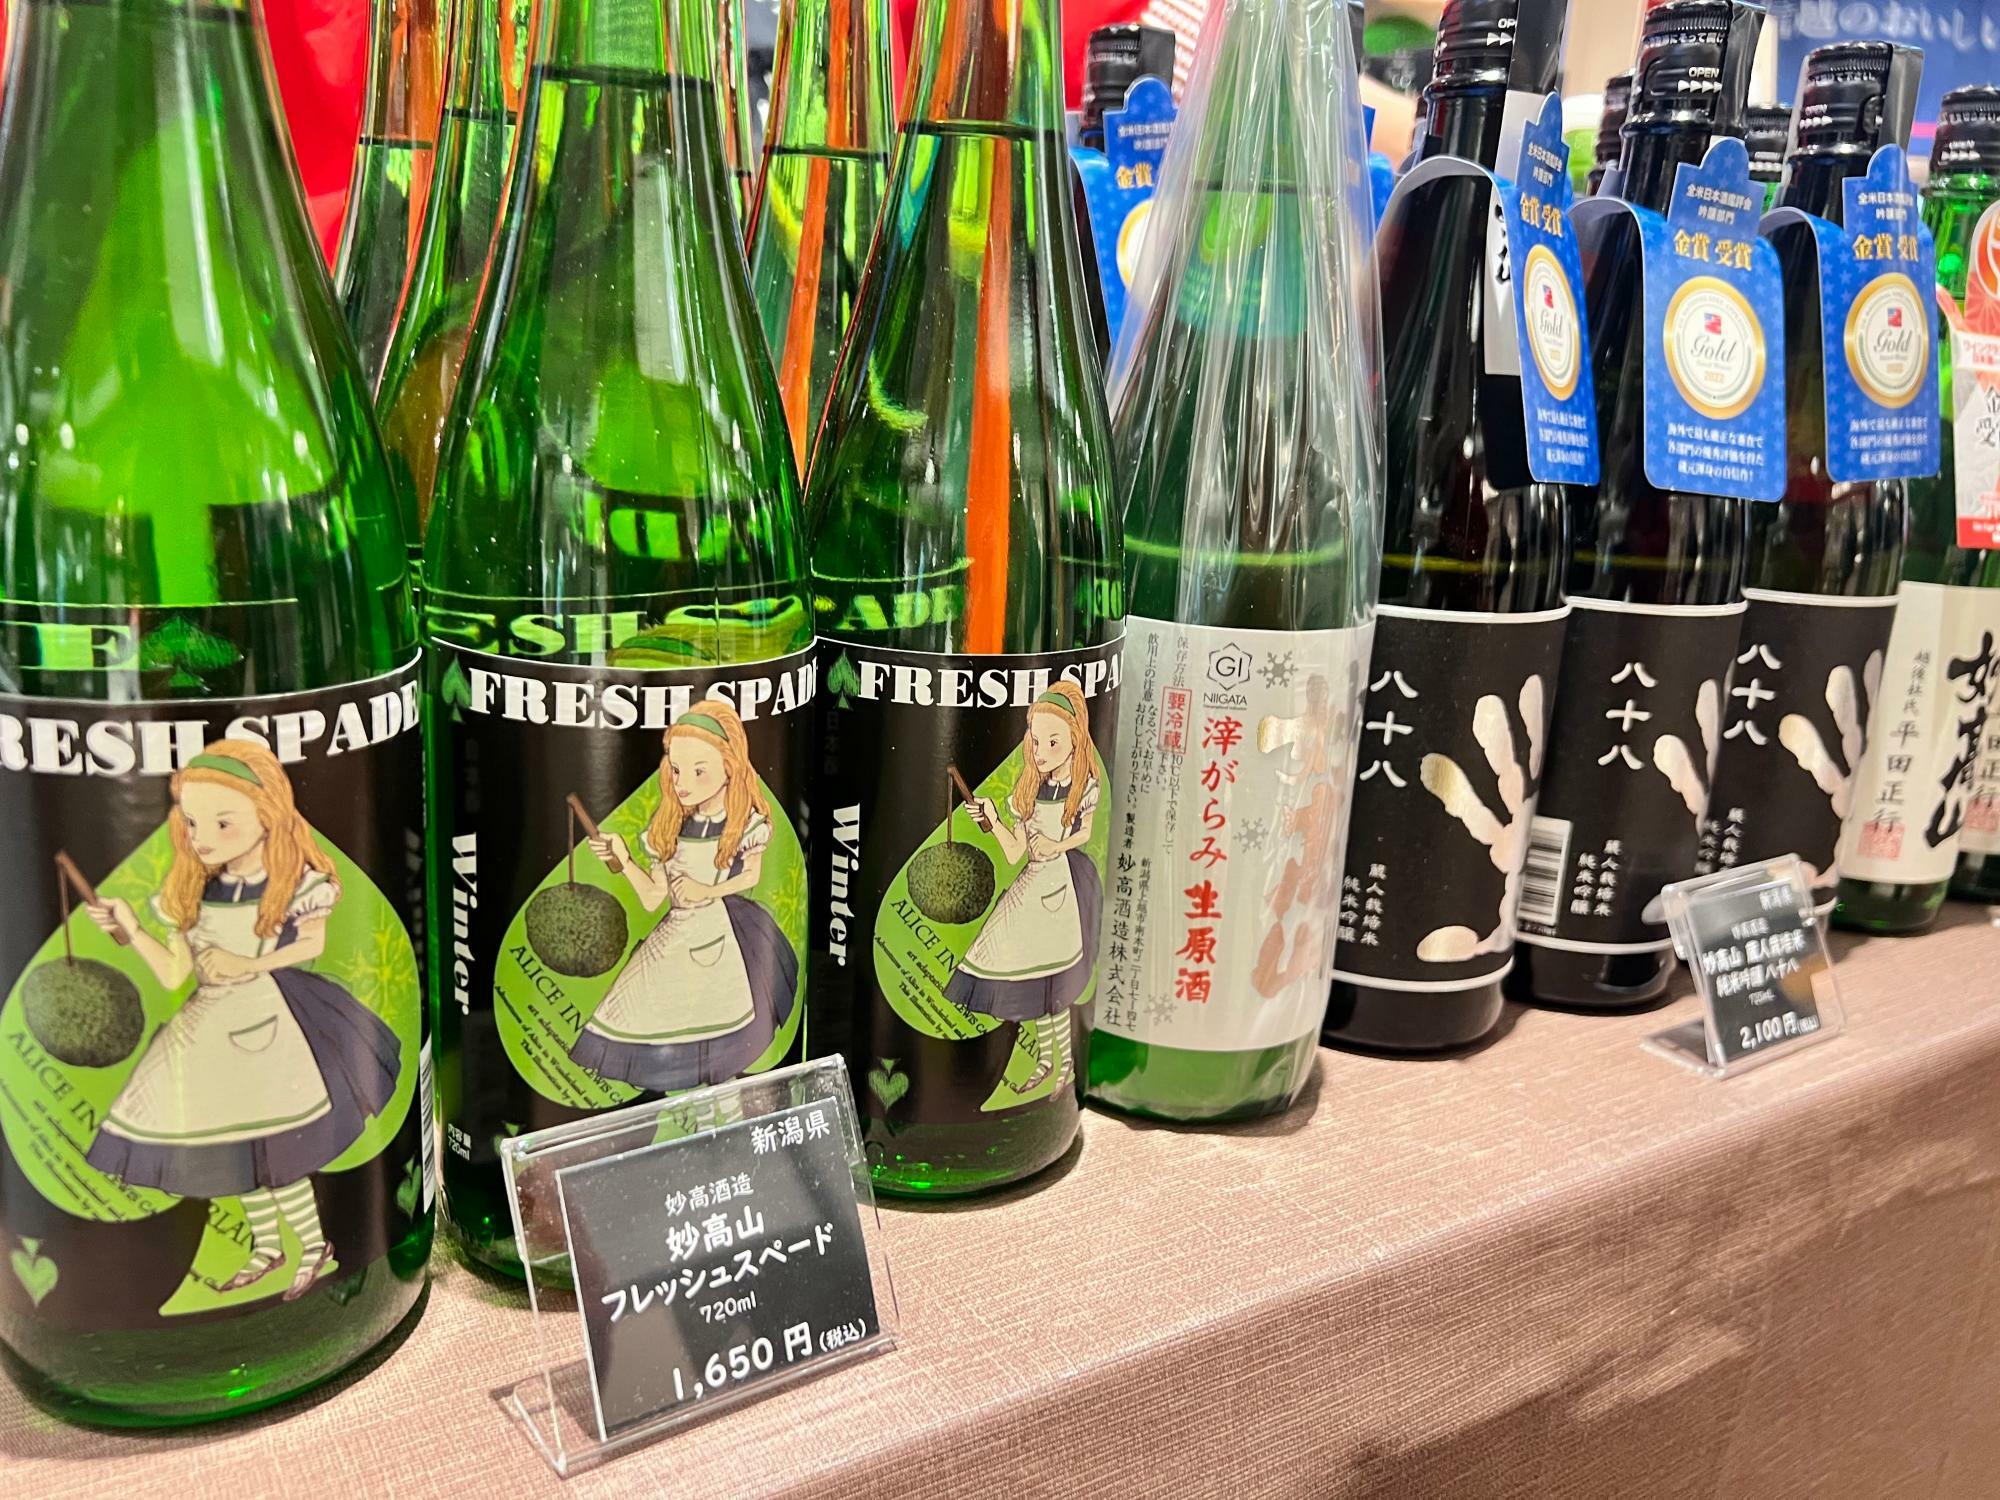 なんともかわいいアリスのラベルの日本酒の由来も聞きました。季節ごとにトランプの4色でラベルを表すので、アリスの世界観を借りるようになったのだとか。このフレッシュスペードは新酒